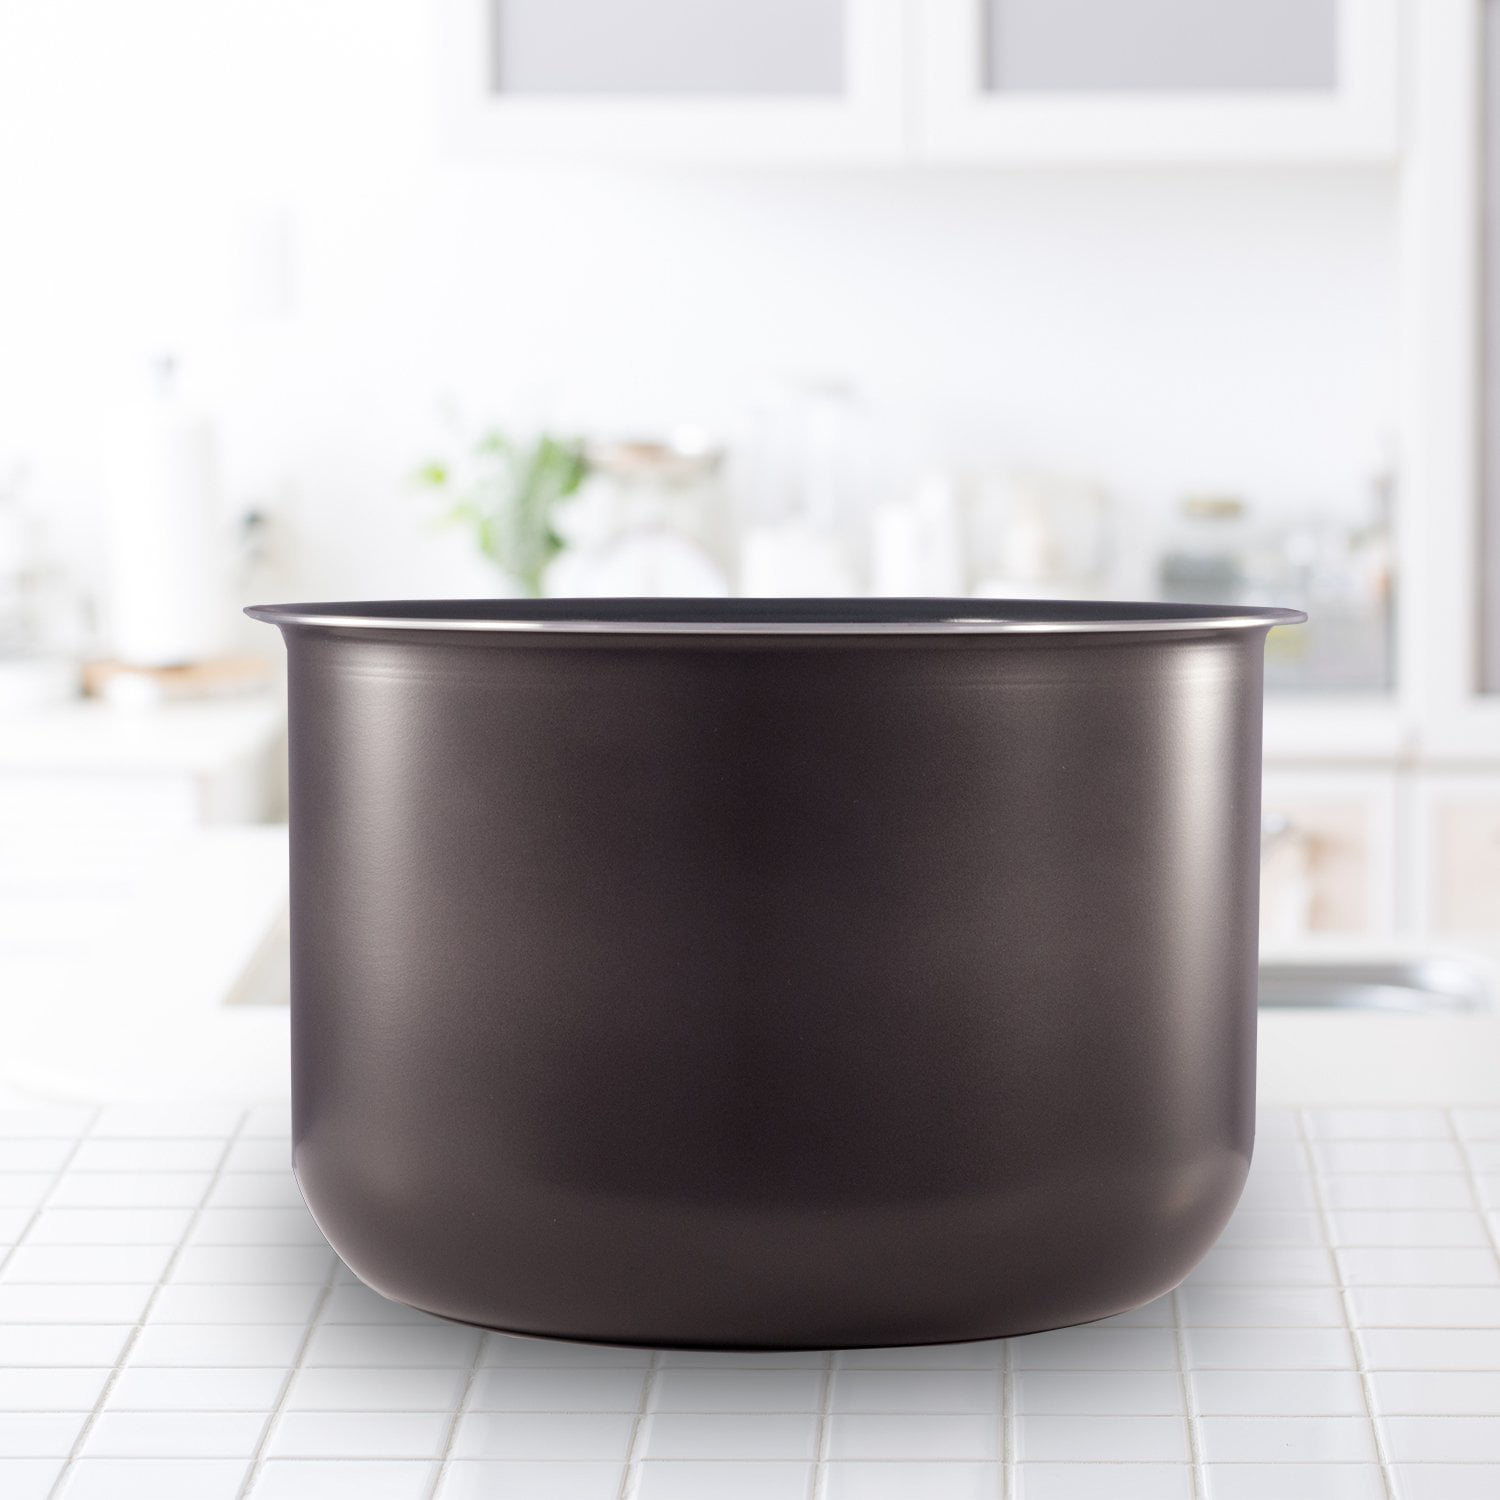 Instant Pot Ceramic Non-Stick Interior Coated Inner Cooking Pot - 8 Quart 